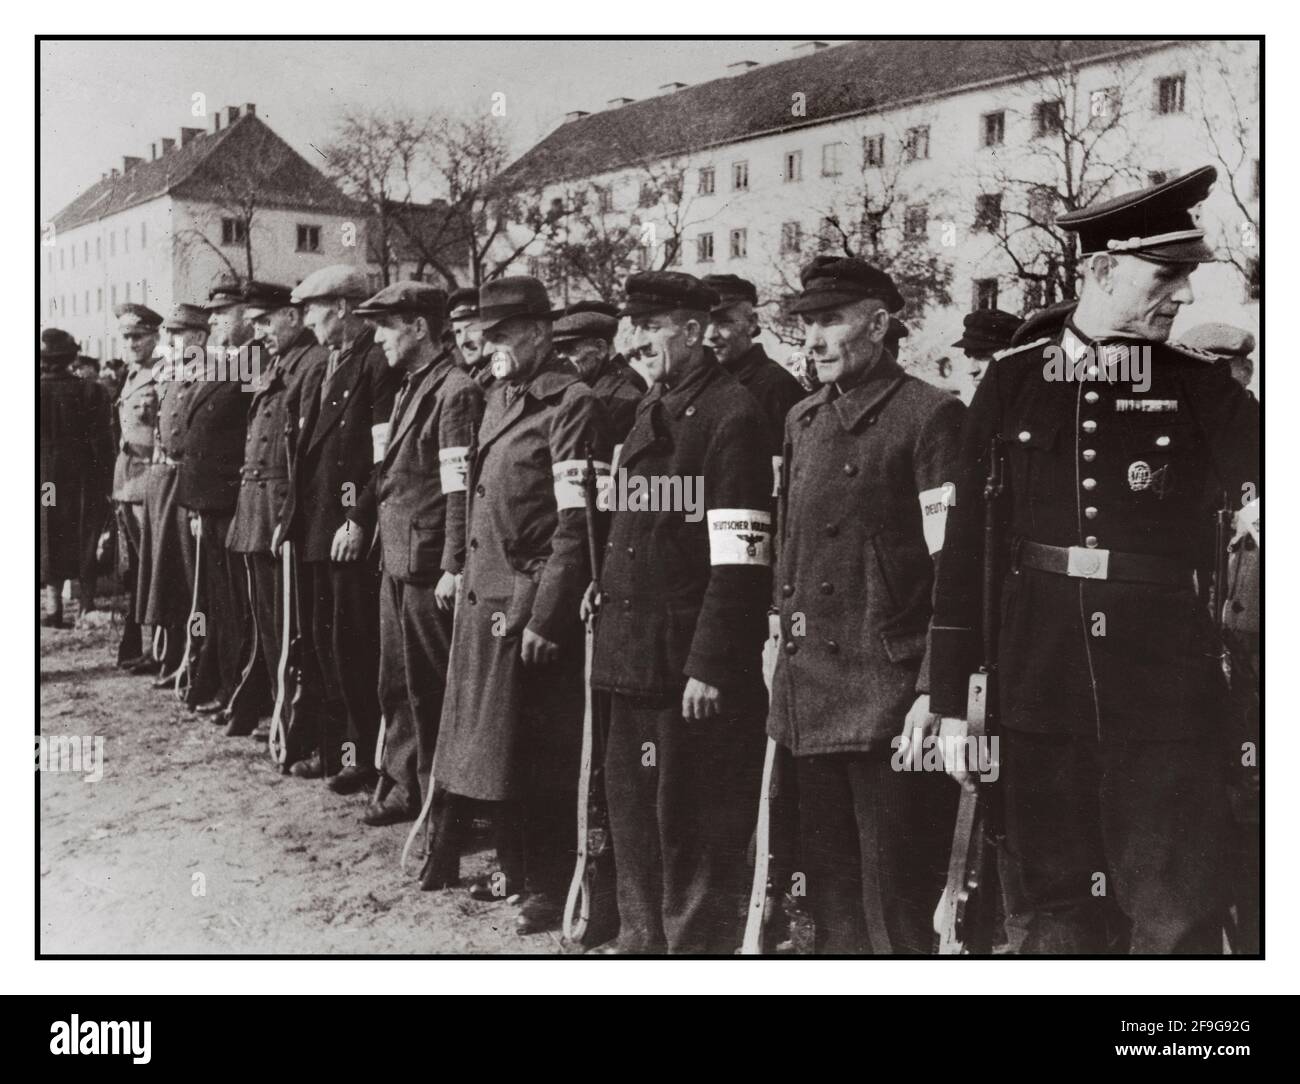 Il VOLKSSTURM 1945 Adolf Hitlers finale speranza e resistenza all'esercito russo avanzante il VOLKSSTURM, popoli tempesta (guardia domestica) volontari malequipaggiati anziani pronti a mettere la loro vita sulla linea per il Fuhrer Foto Stock